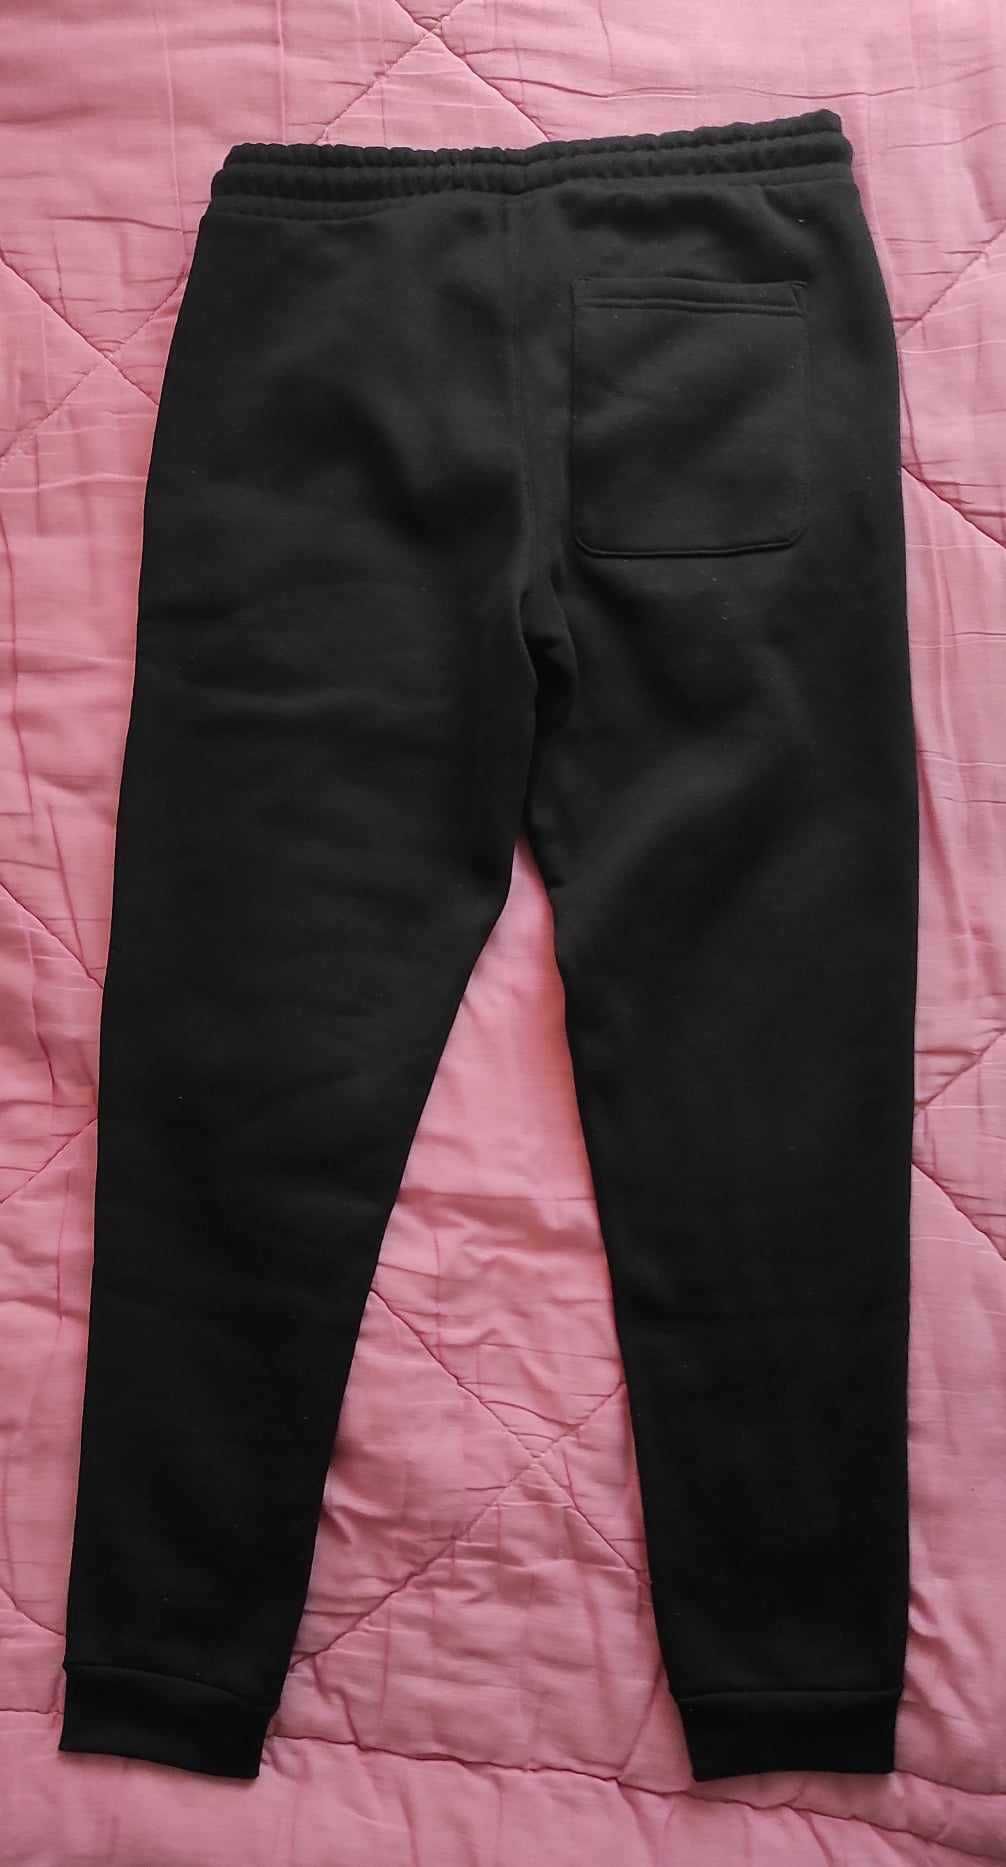 Spodnie dresowe męskie firmy Sinsay, roz. S